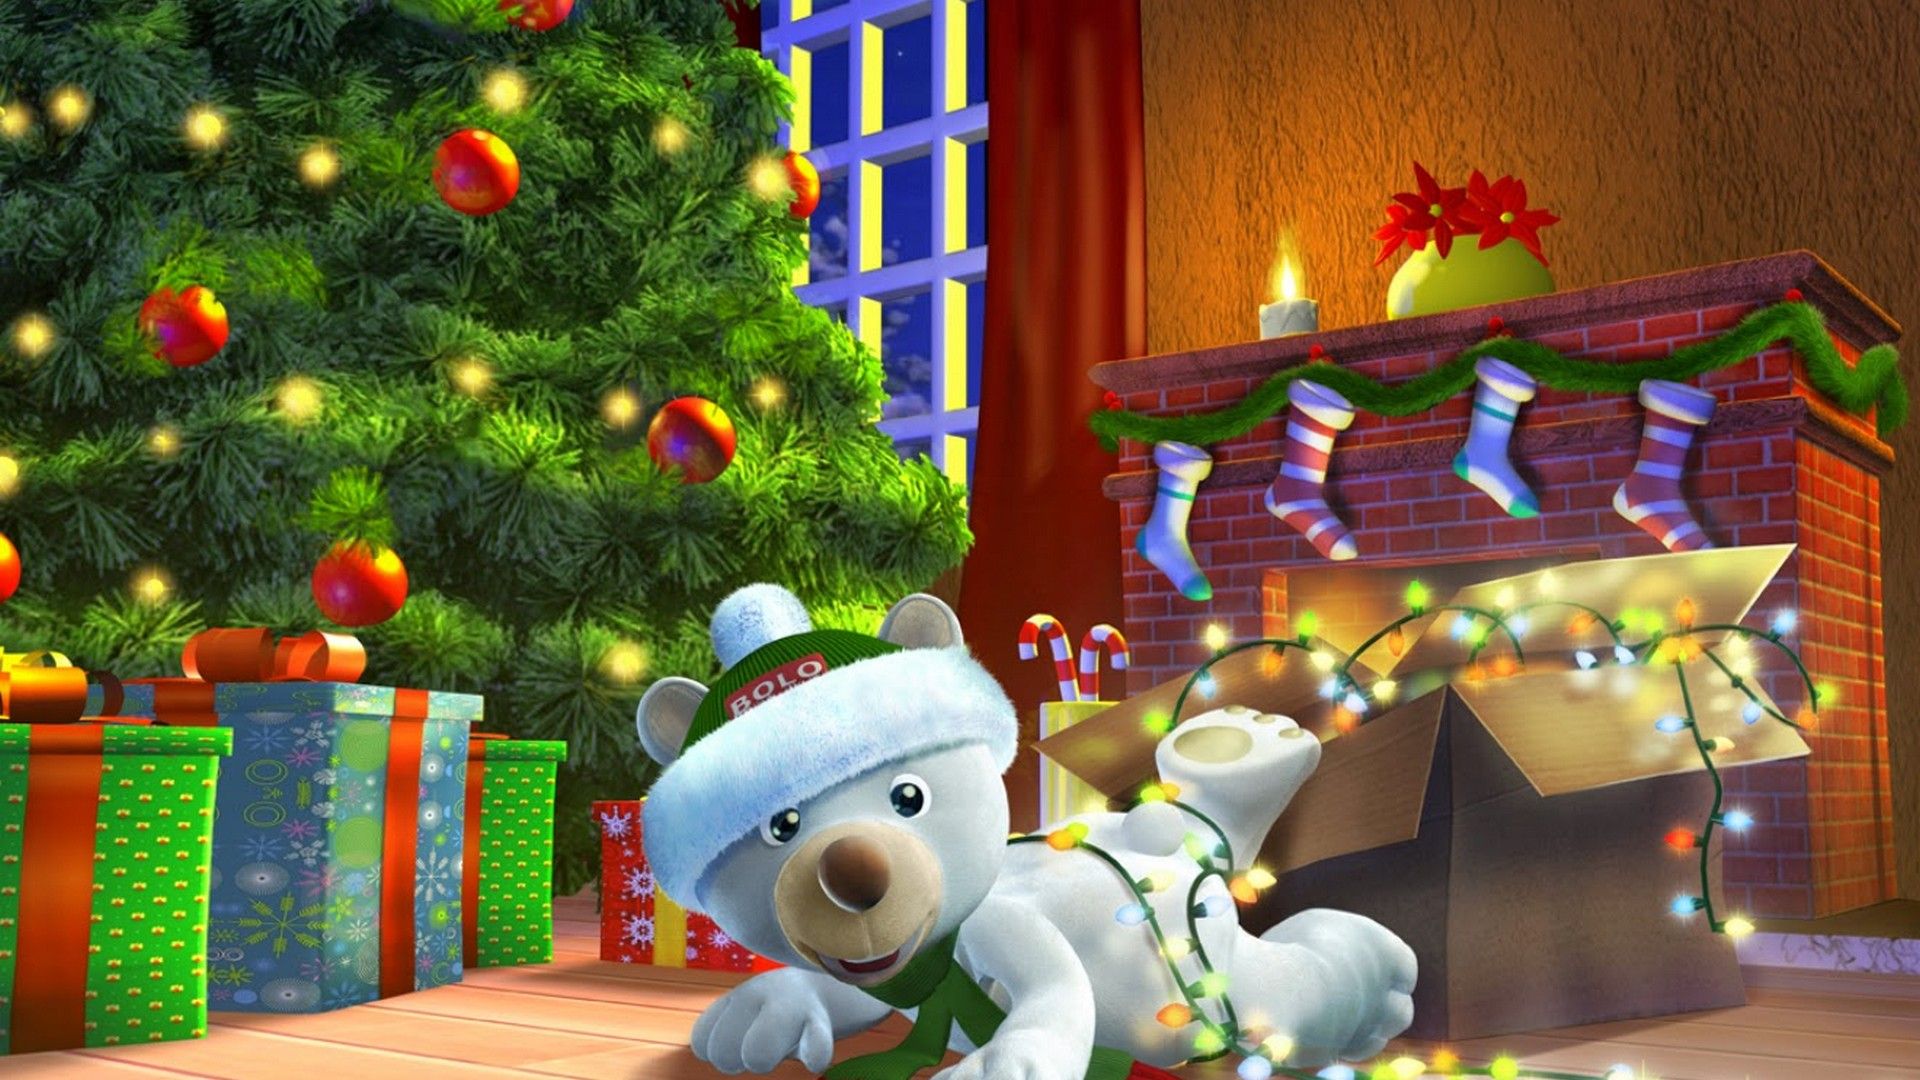 Christmas Teddy Bears Wallpapers